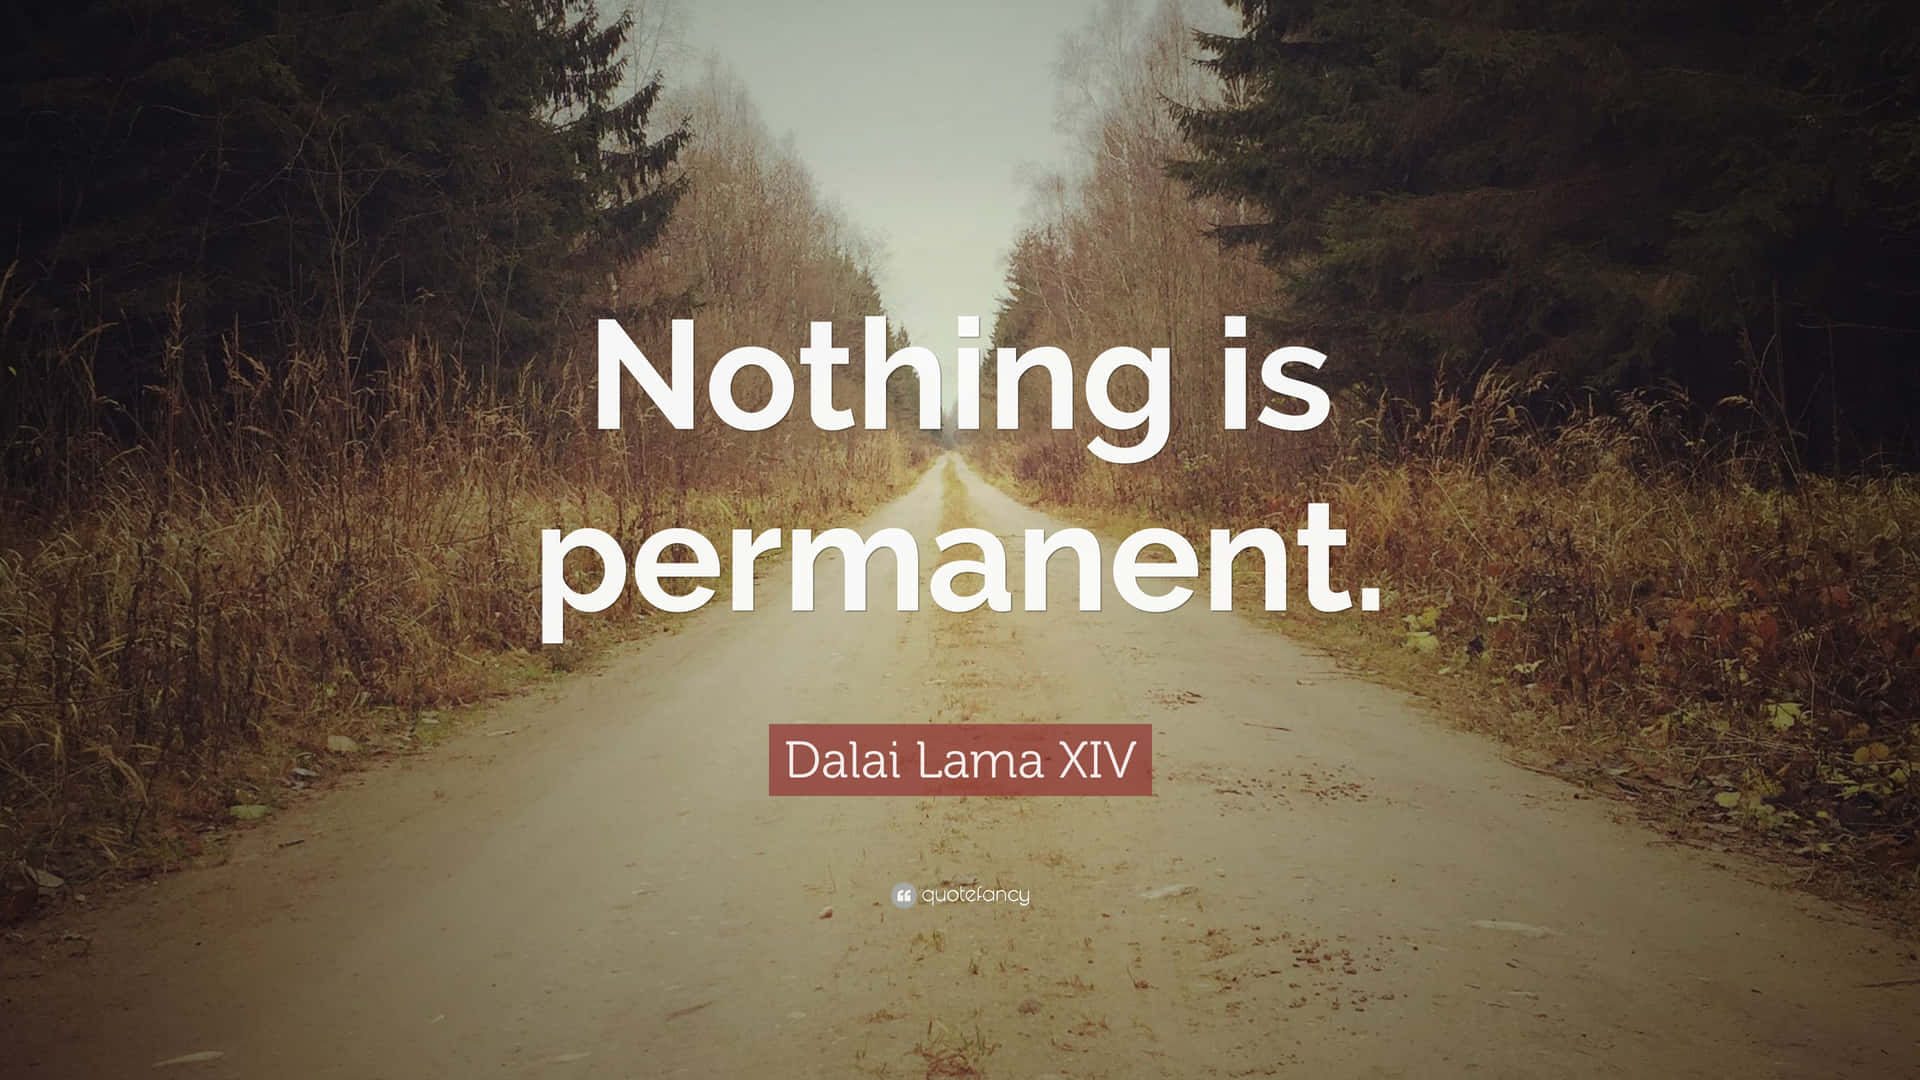 Ingentingär Permanent - Dalai Lama-citat. Wallpaper